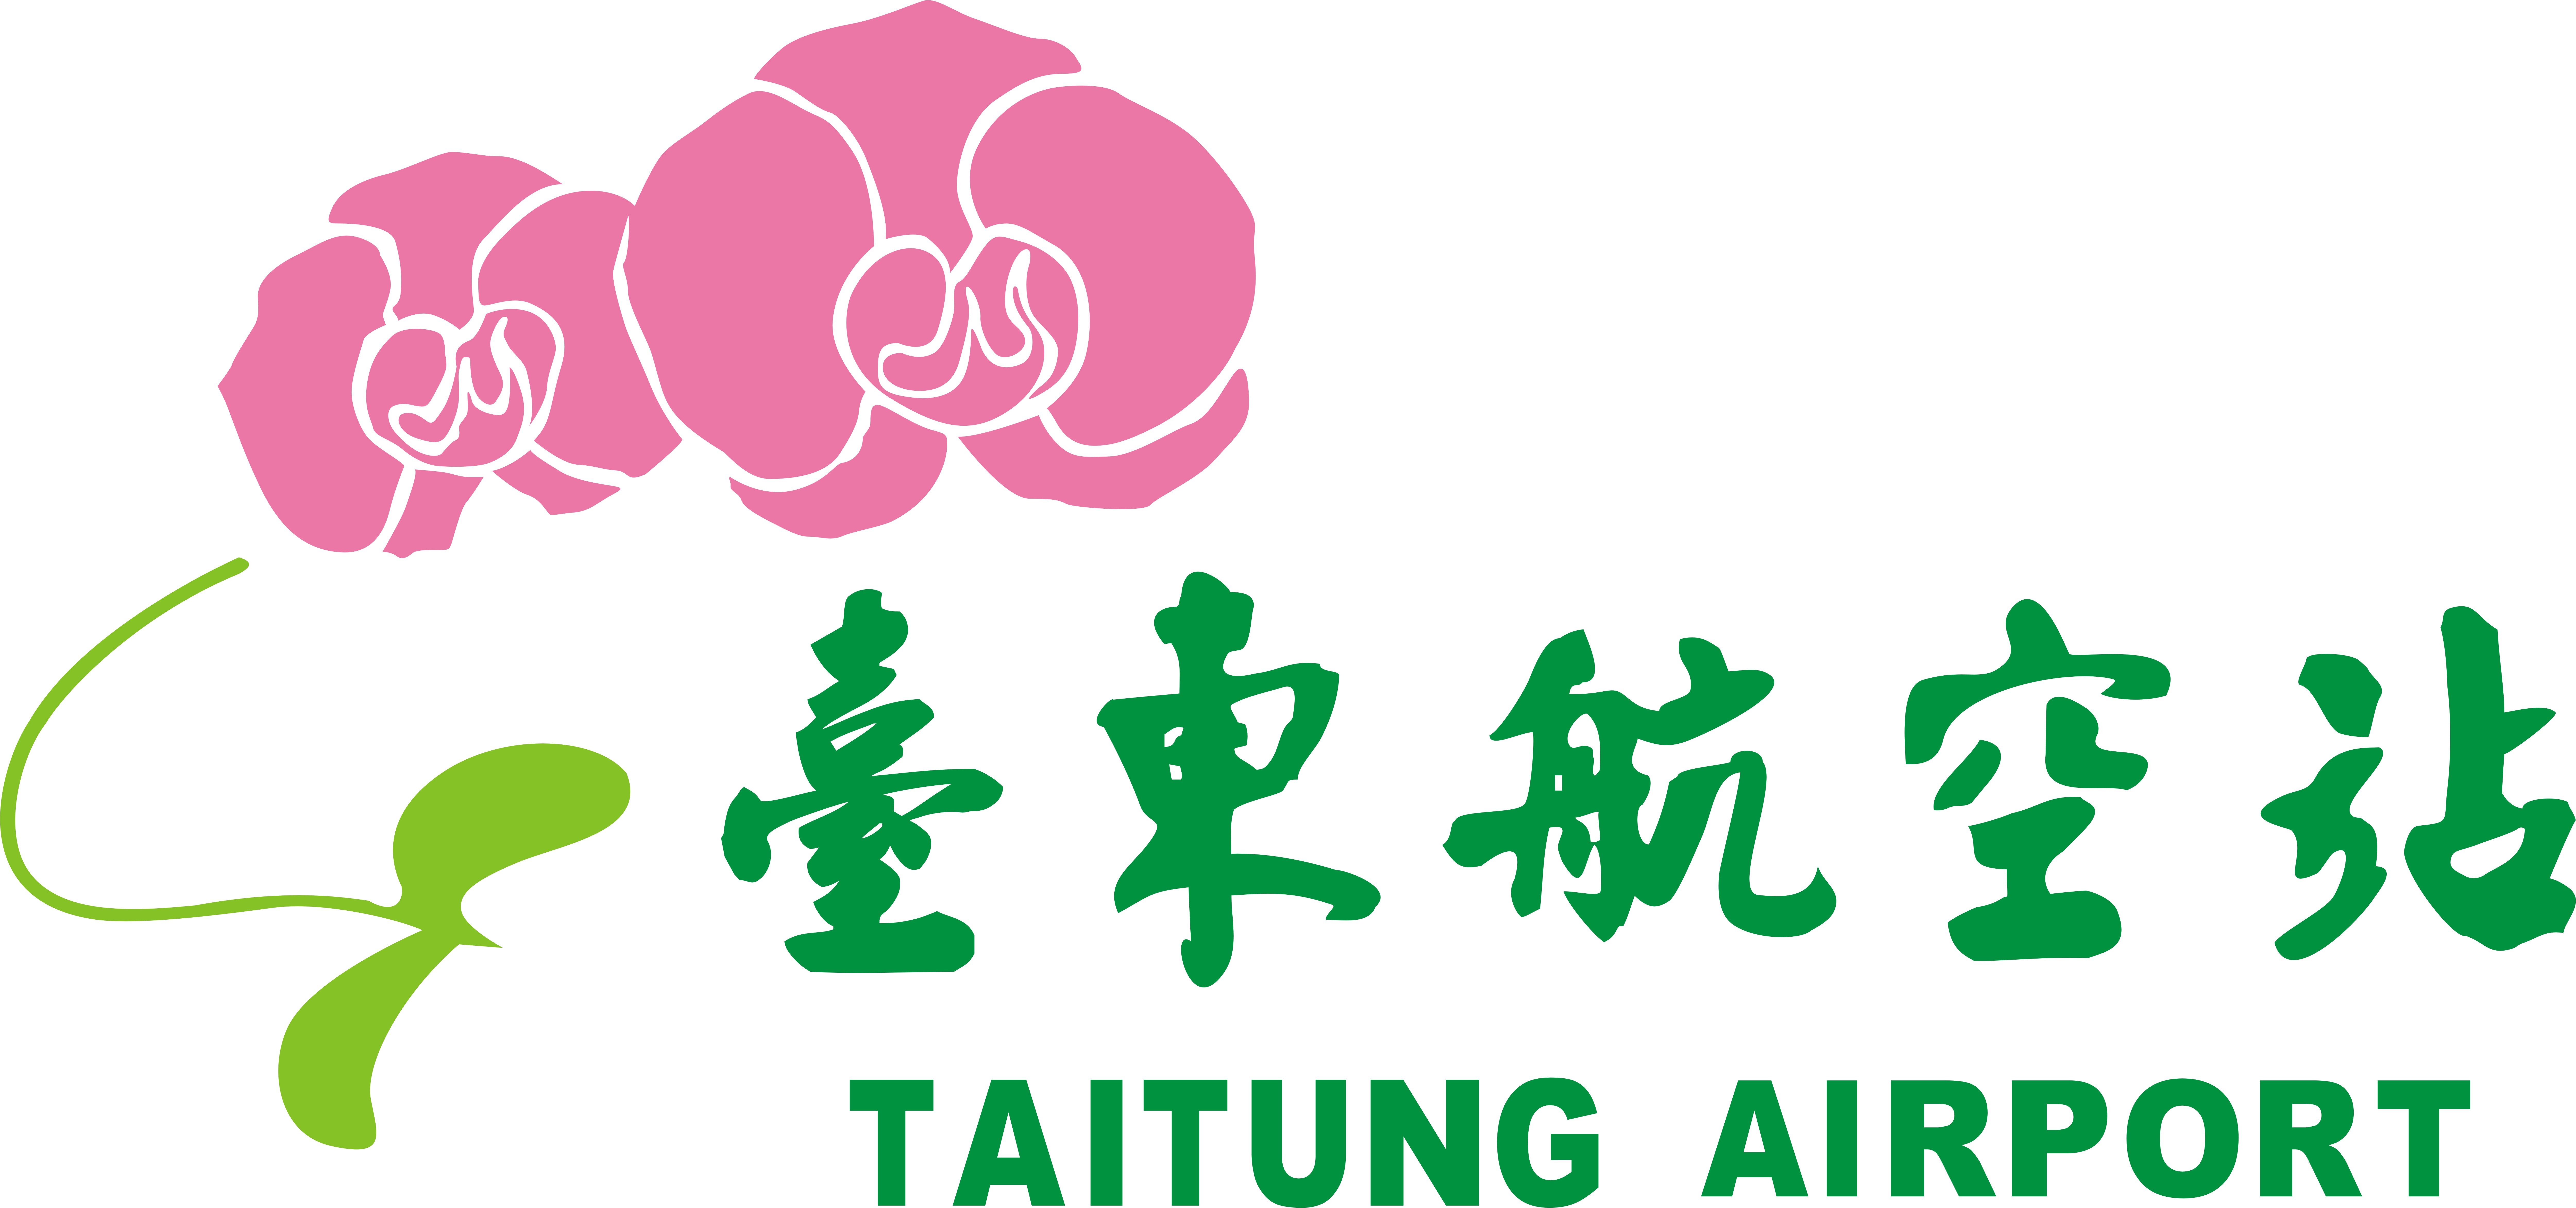 1.臺東航空站Logo